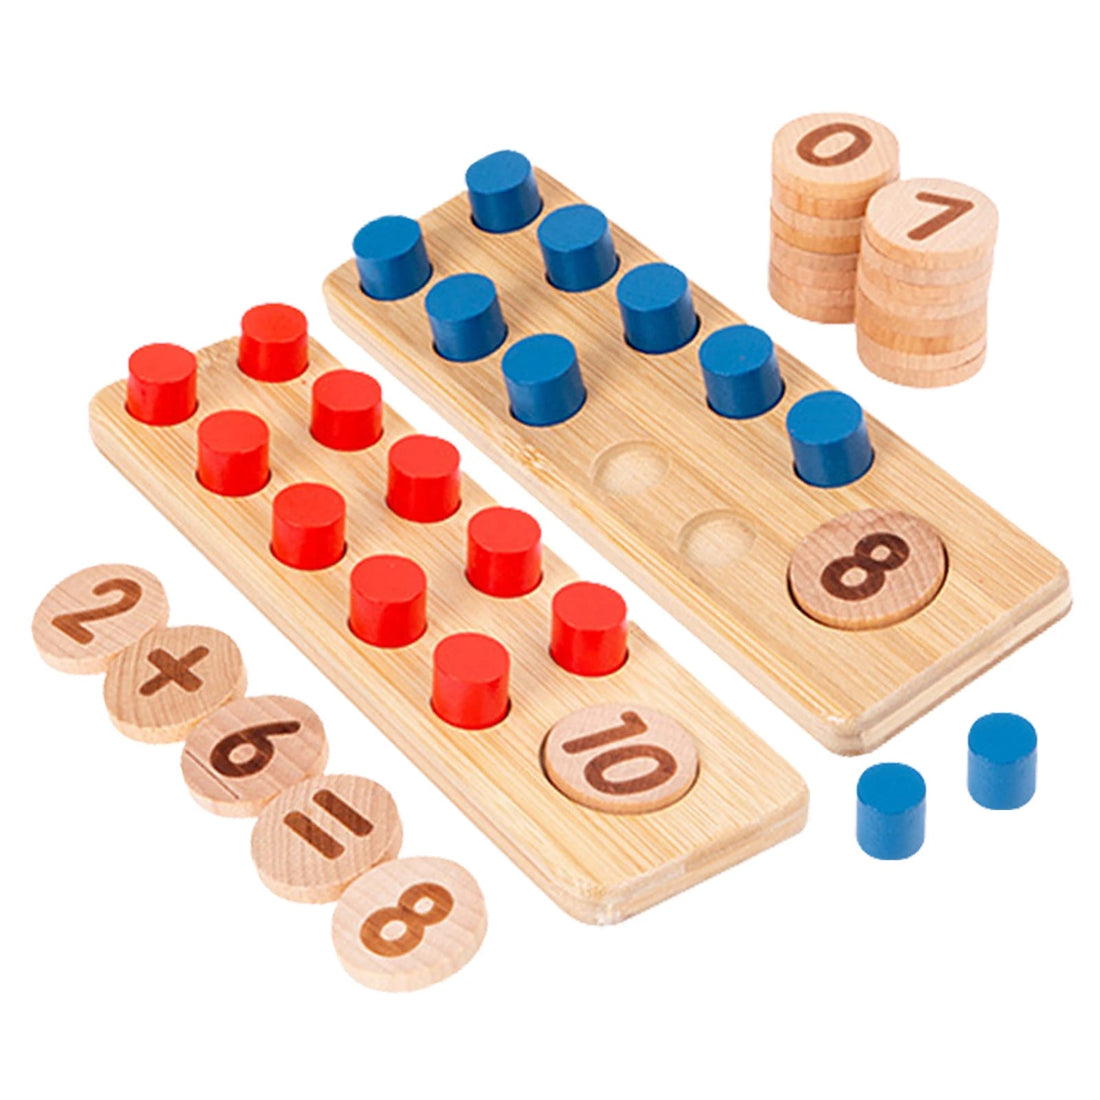 Découvrez comment la grille de calcul Montessori peut aider à améliorer les compétences mathématiques de votre enfant !